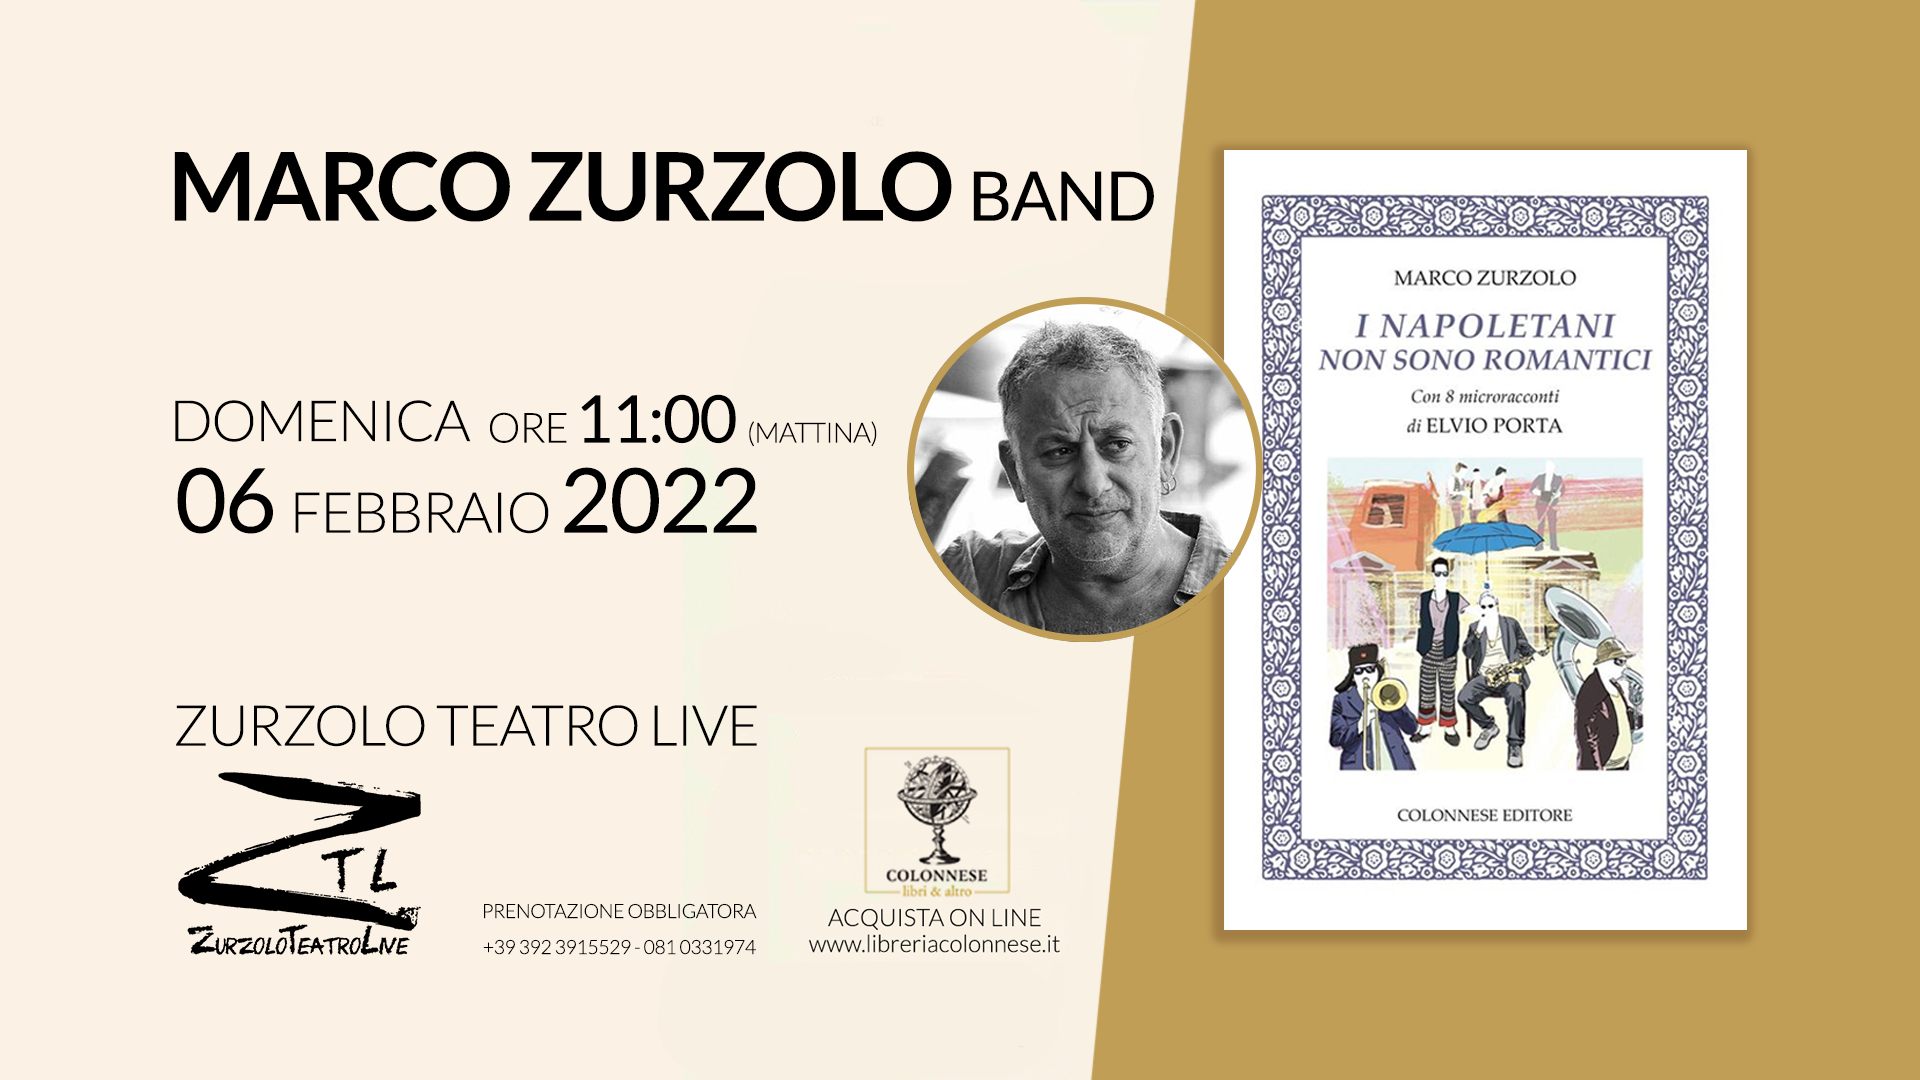 06.02.2022 “I NAPOLETANI NON SONO ROMANTICI” – Marco Zurzolo Band